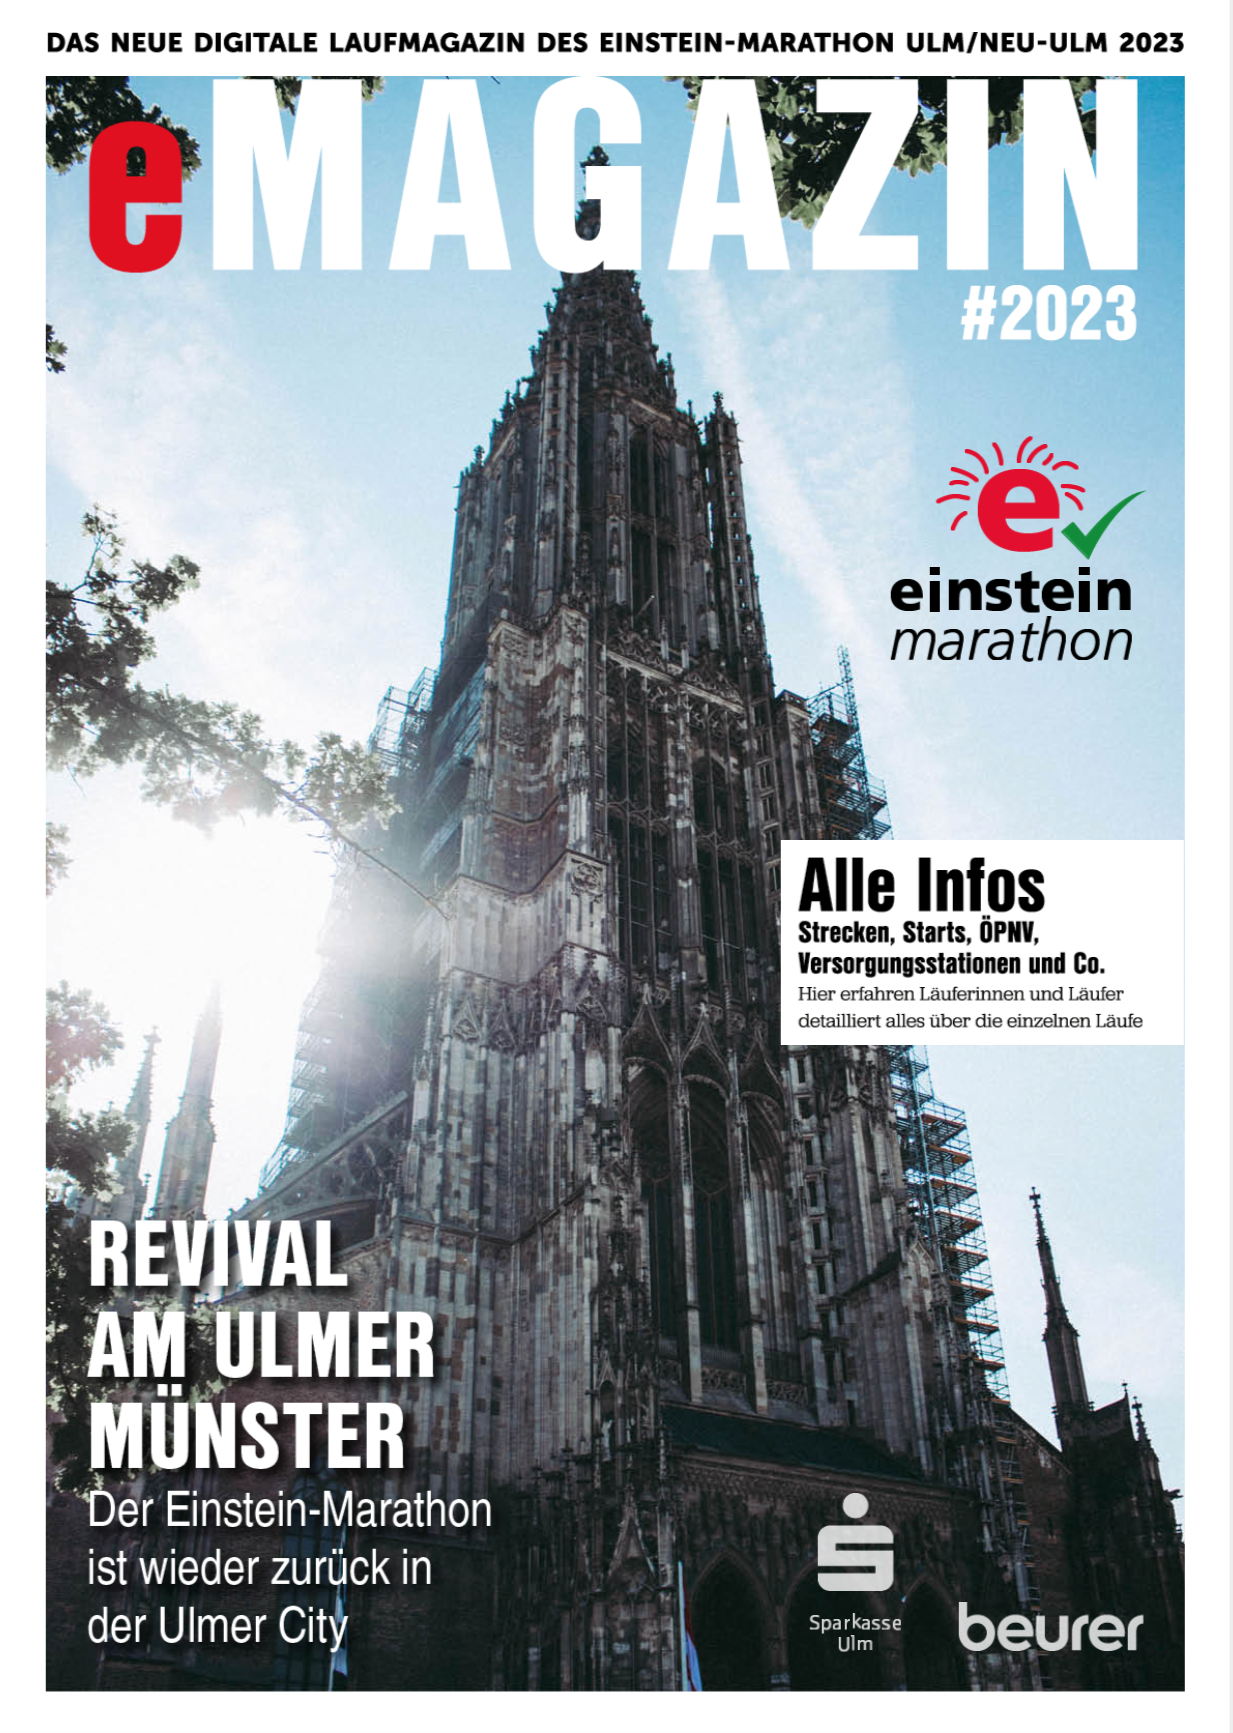 Das neue eMagazin zum Einstein-Marathon 2023 — jetzt online